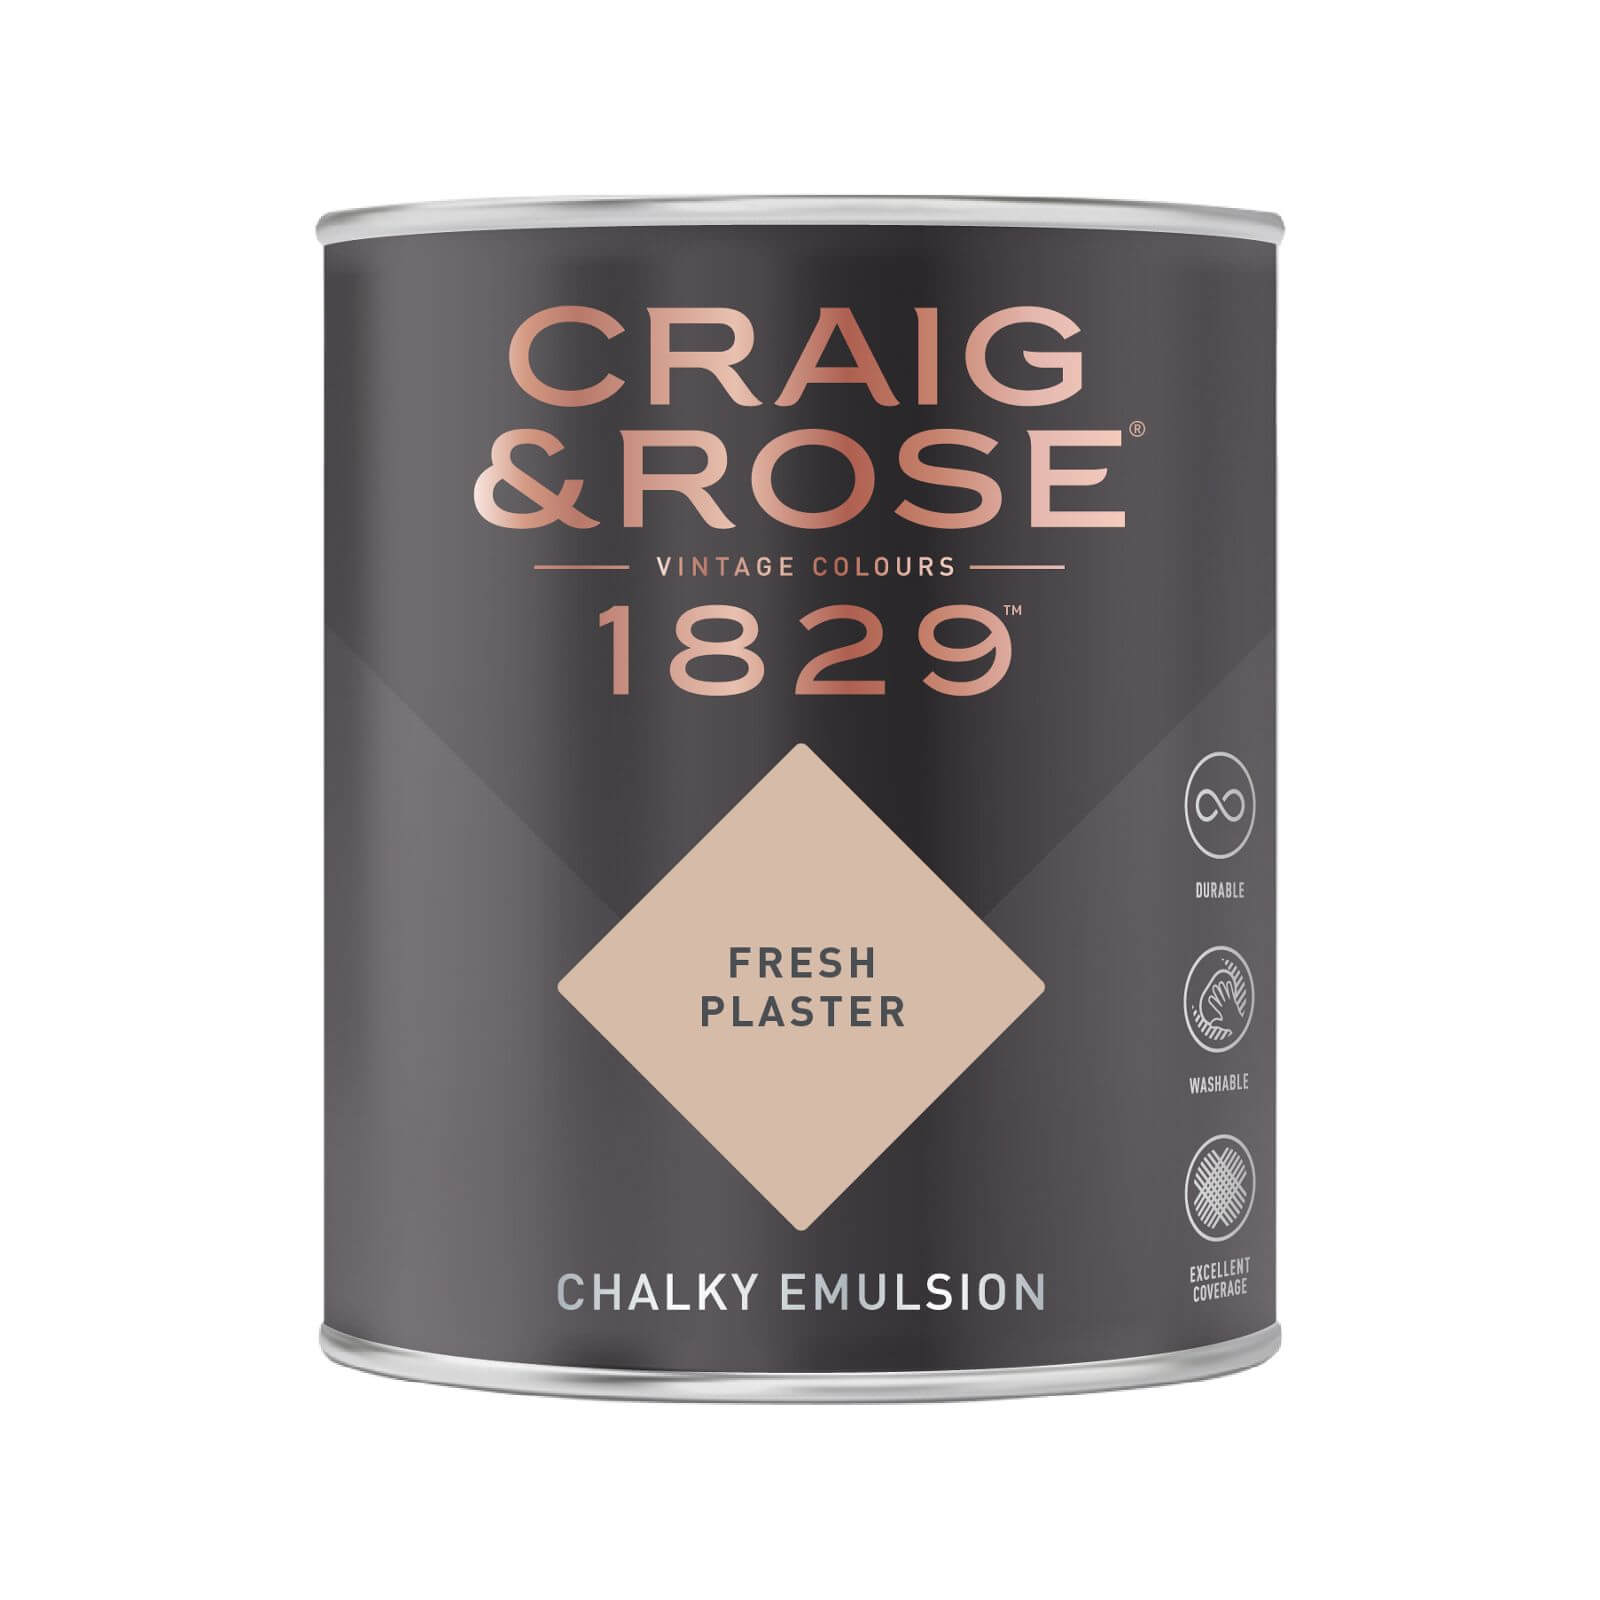 Craig & Rose 1829 Chalky Emulsion Paint Fresh Plaster - 750ml